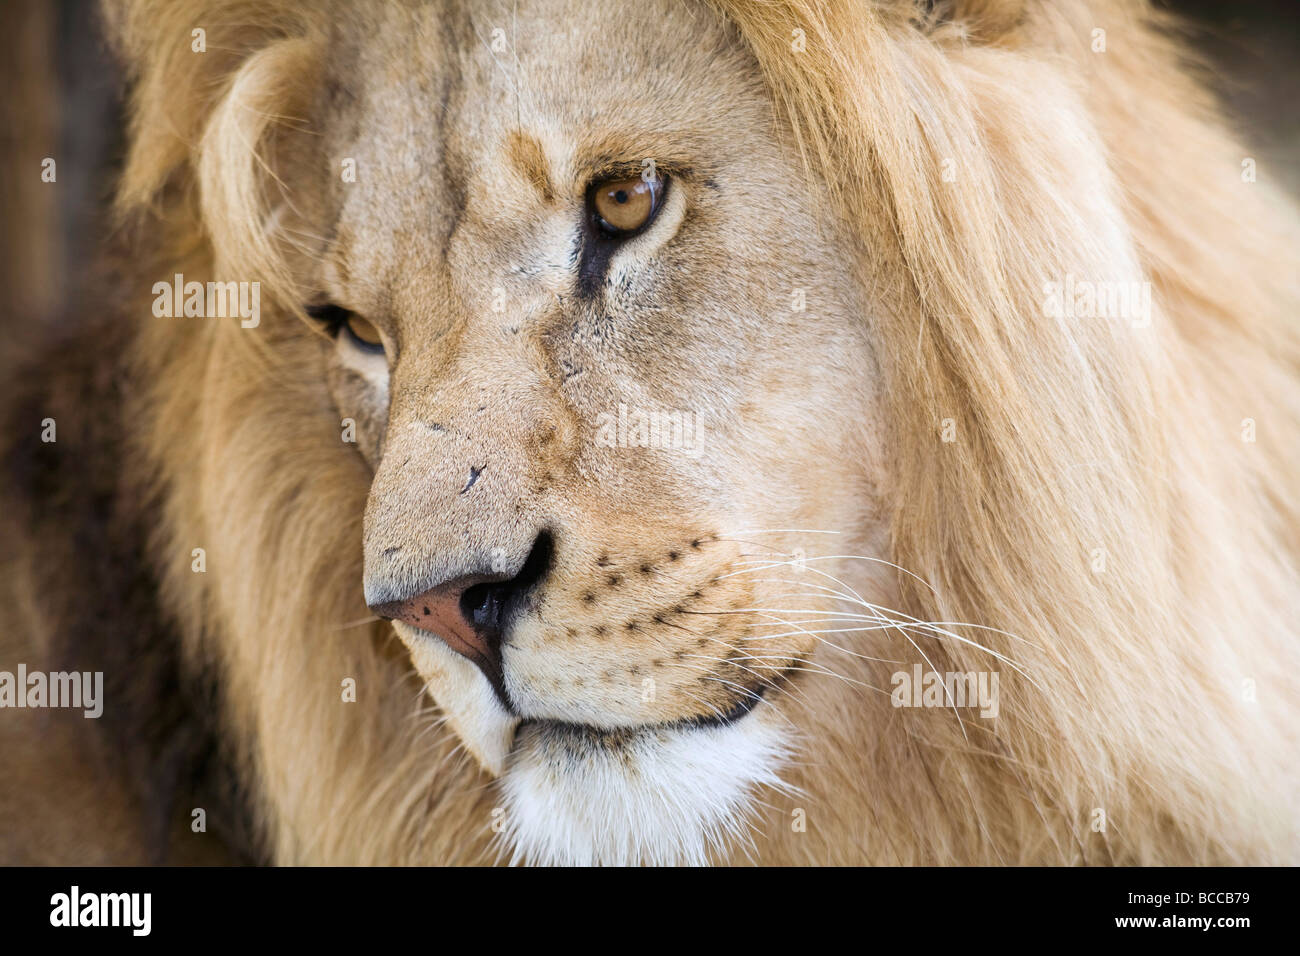 Le fort et beau visage d'un homme lion très close up Banque D'Images